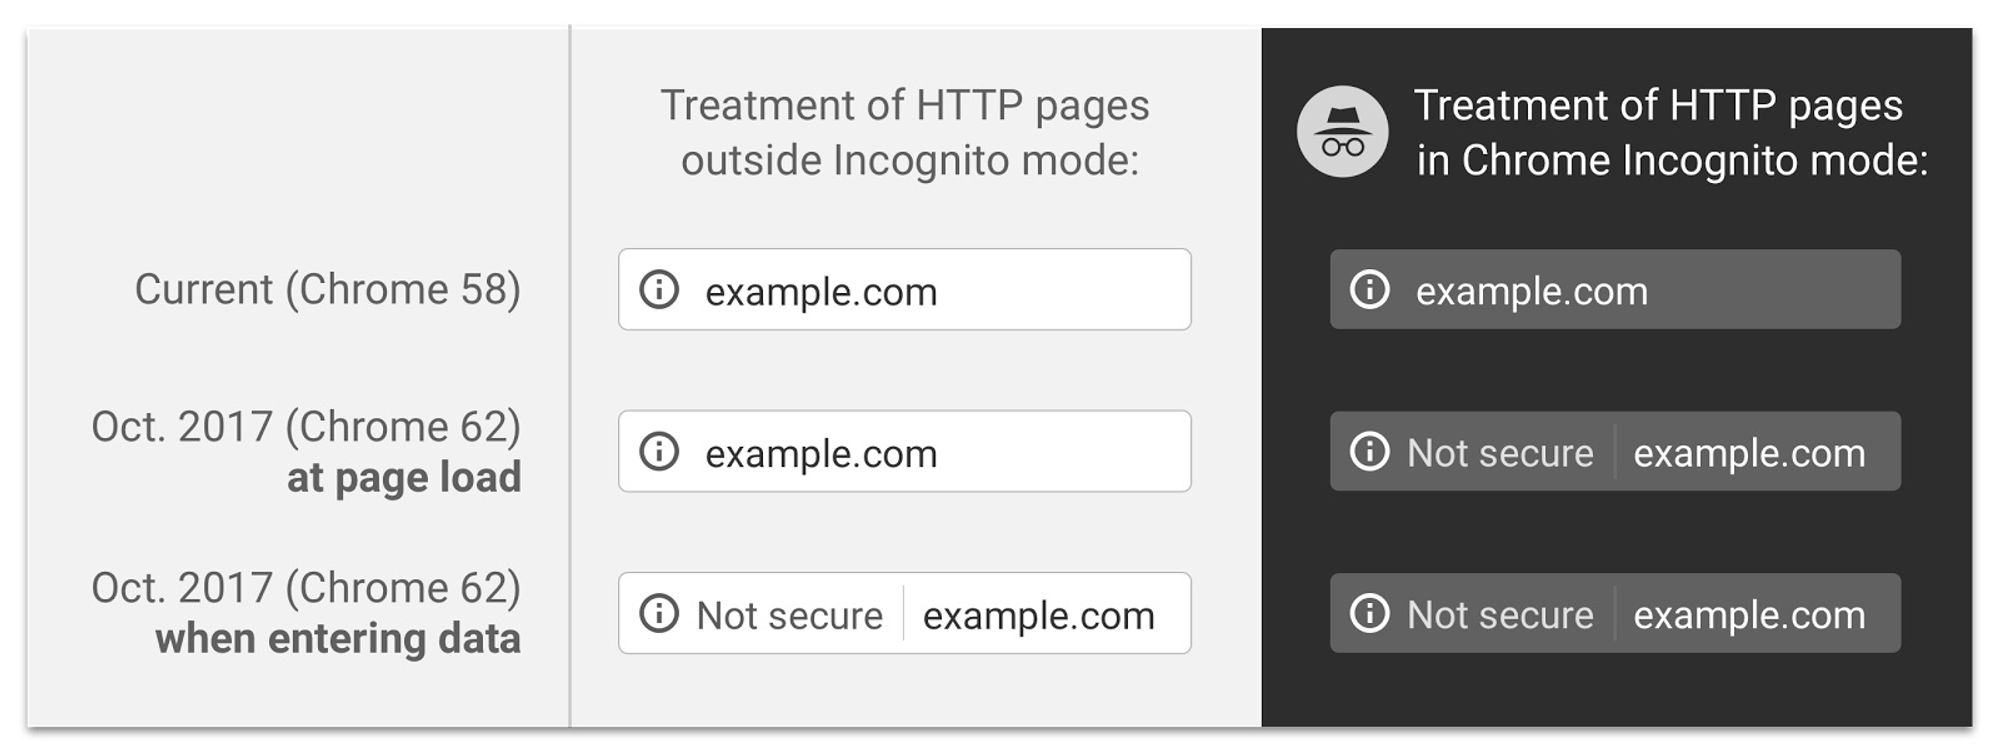 Slik vil Chrome varsle brukerne om HTTP-leverte websider fra oktober av.